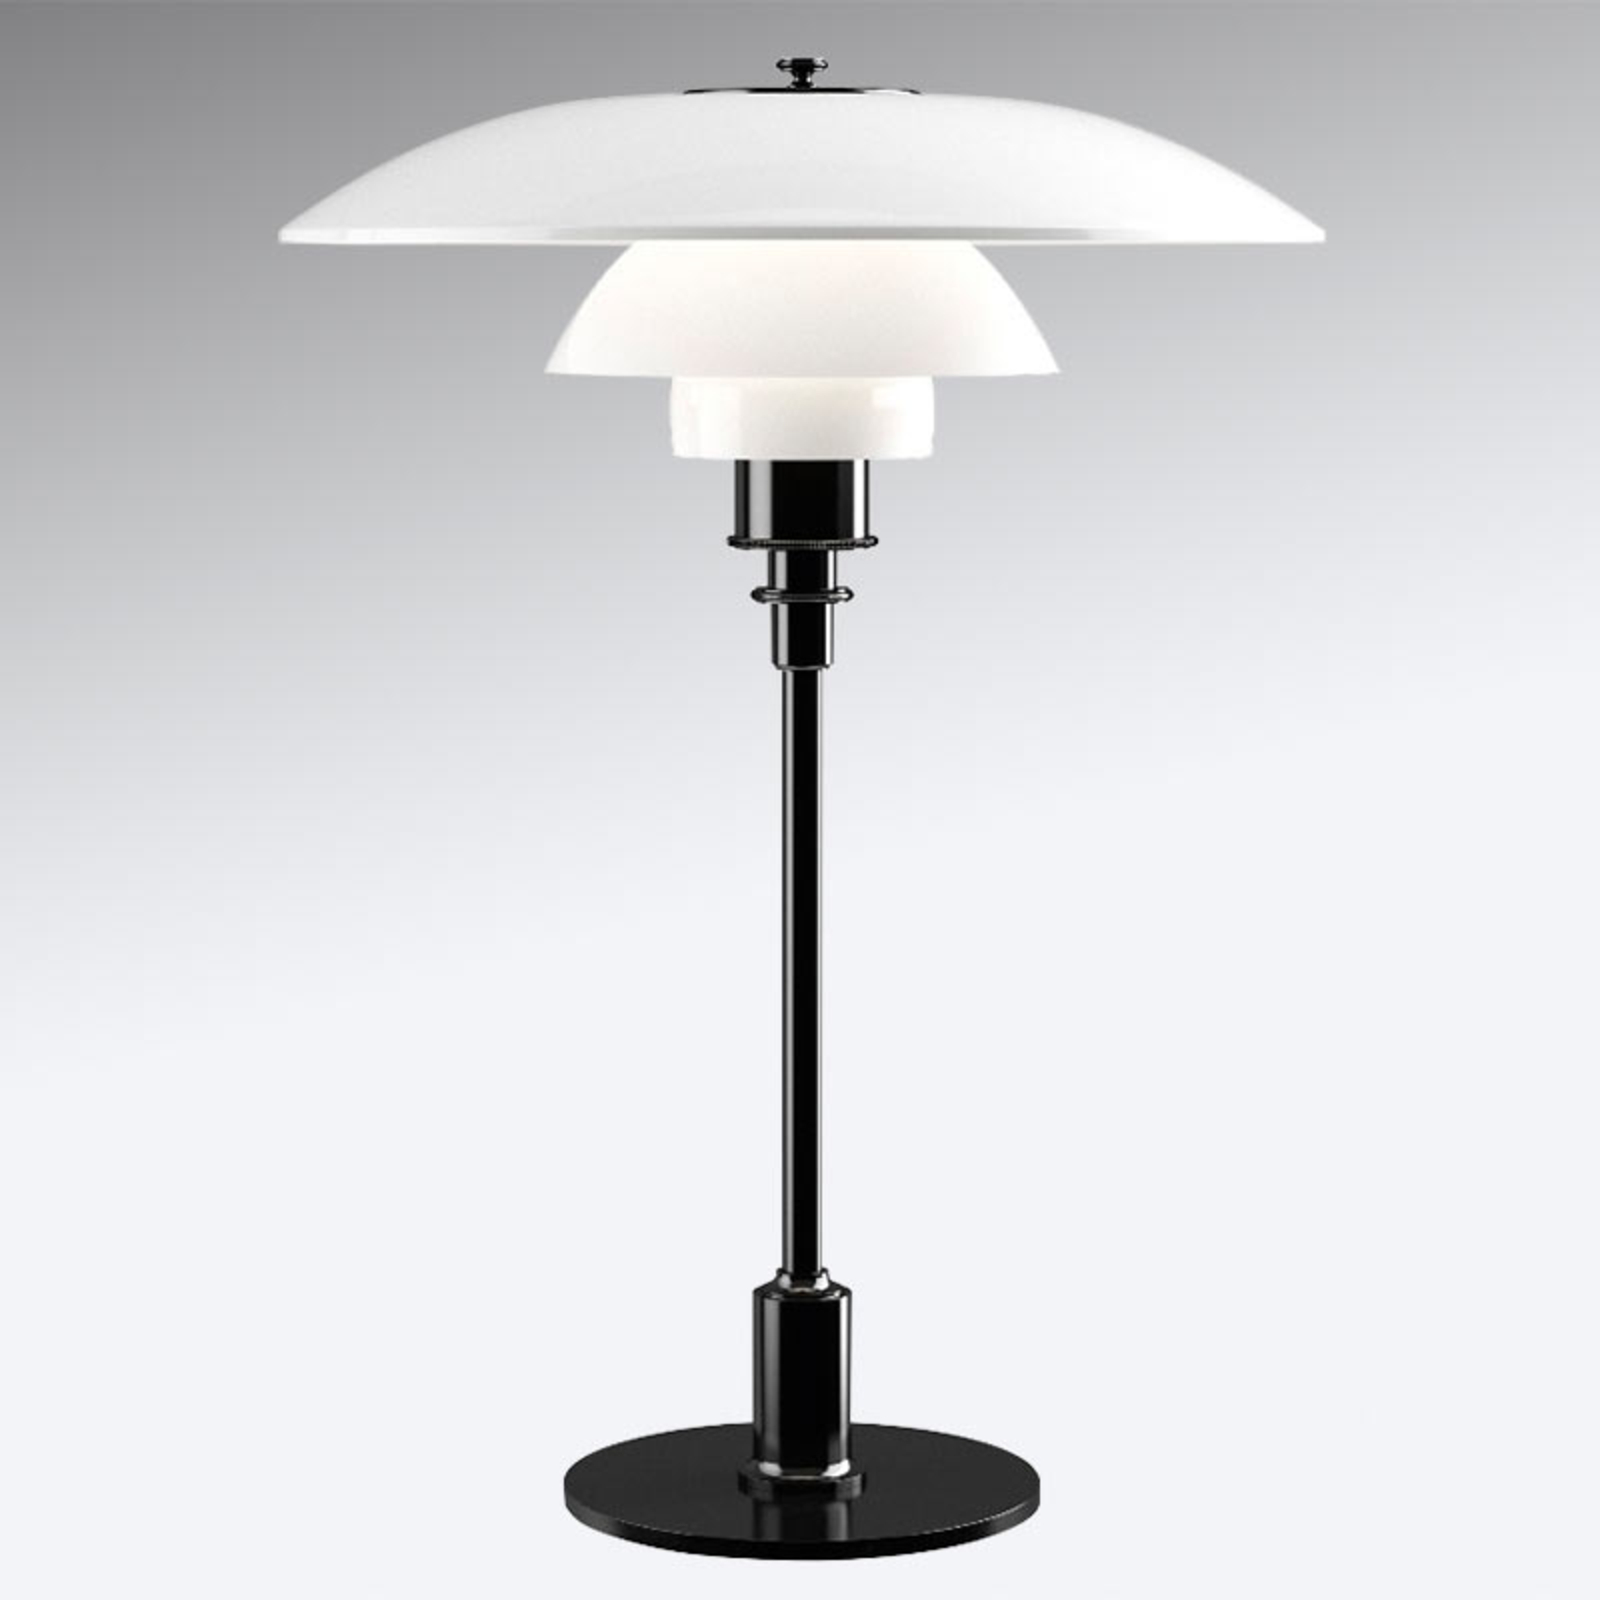 Louis Poulsen PH 3 1/2-2 1/2 table lamp black